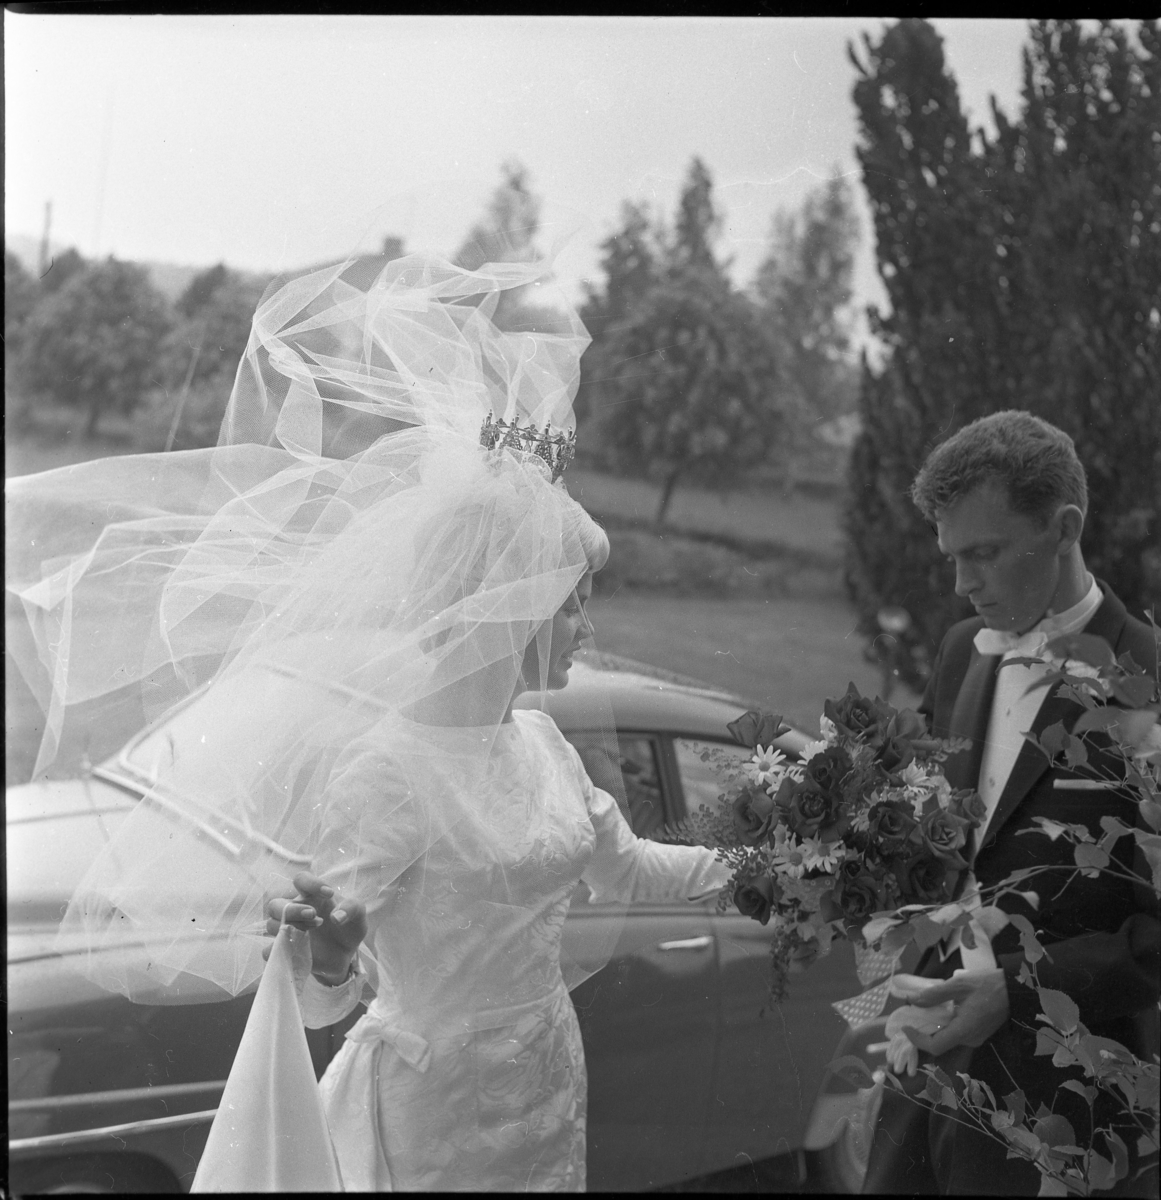 Nygifta Rolf Nilsson och Lisbeth Johansson utanför Örserums kyrka. Vinden sliter i brudslöjan. I bakgrunden står en SAAB.